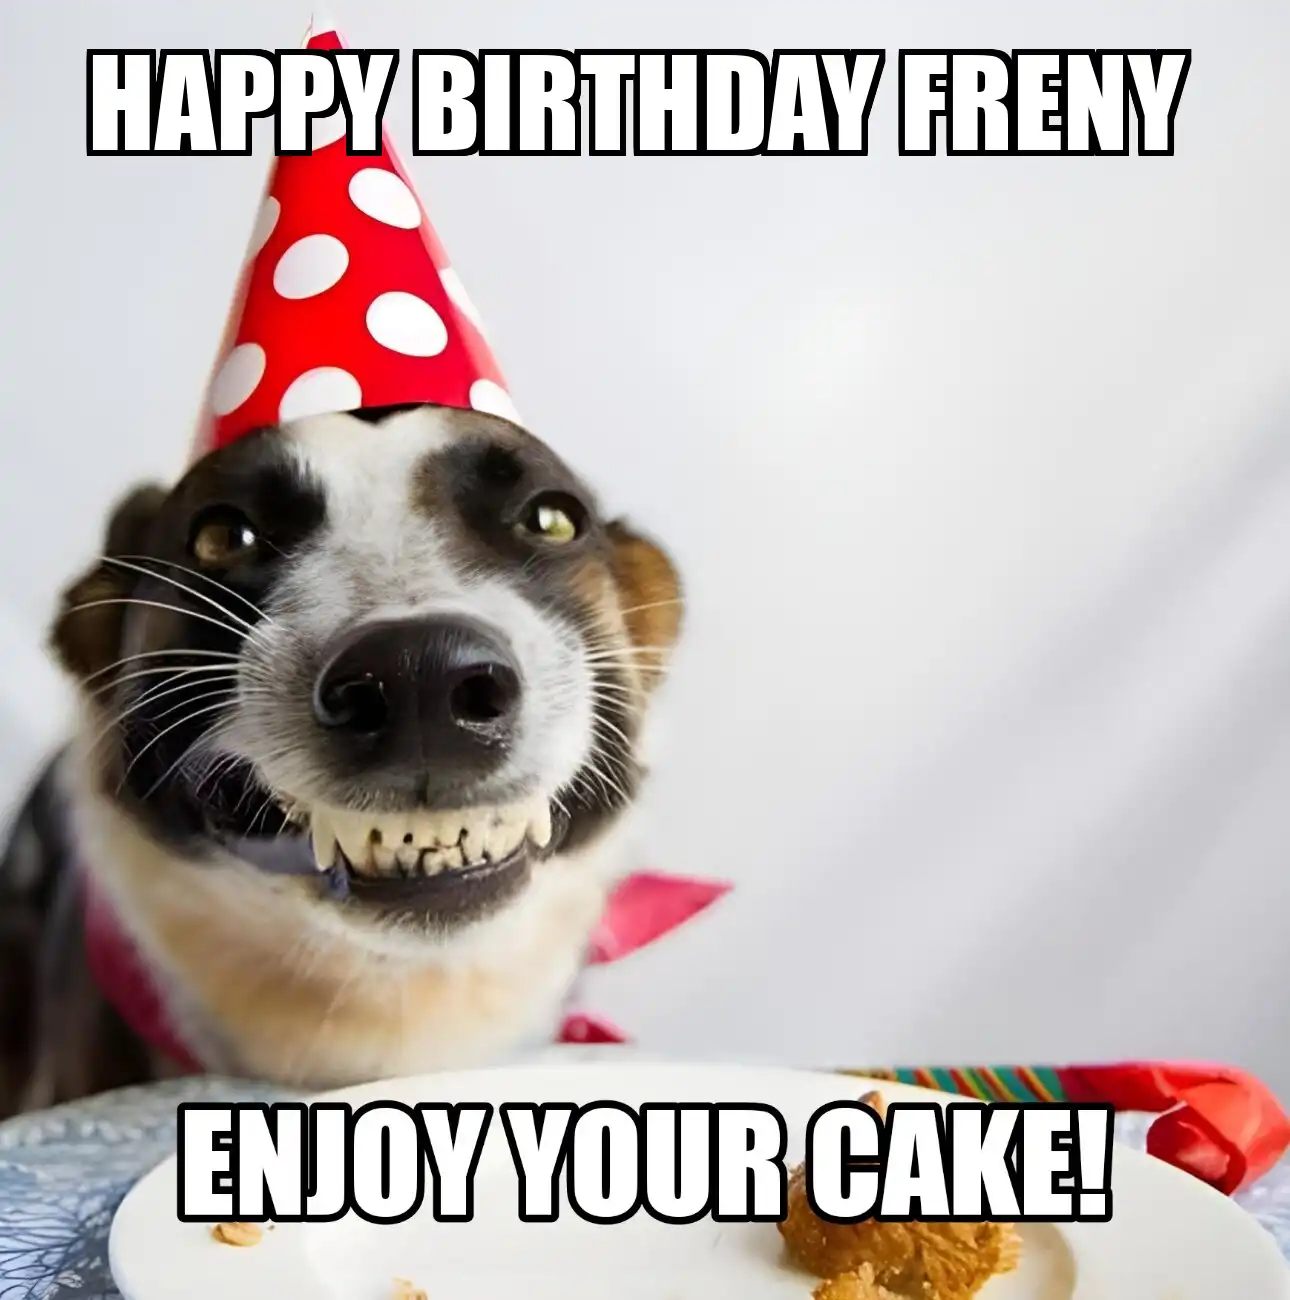 Happy Birthday Freny Enjoy Your Cake Dog Meme